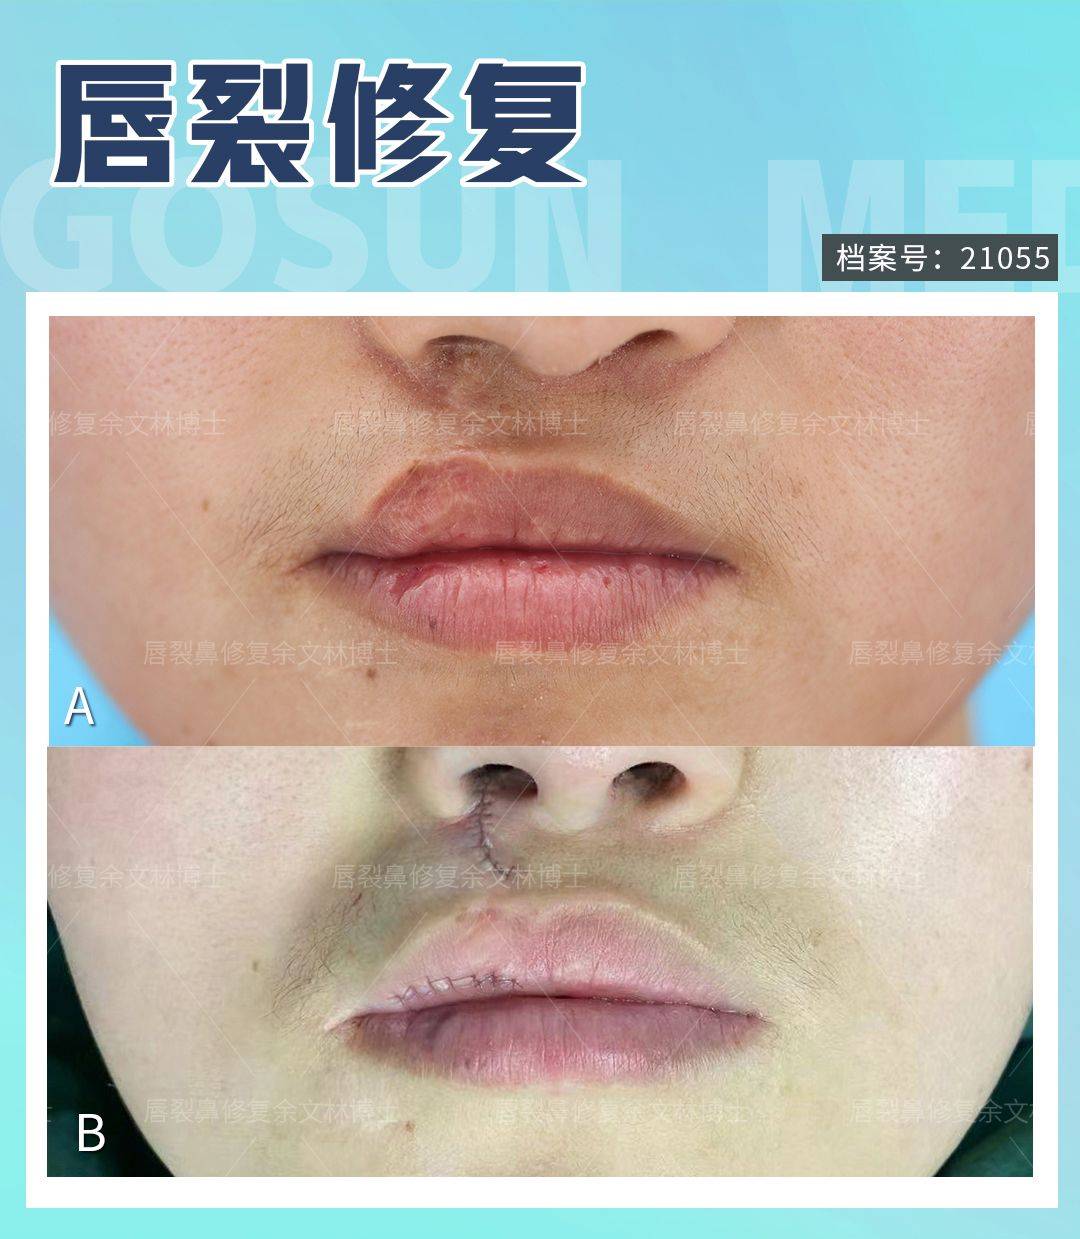 【案例分享】上唇偏薄且无唇珠的患者做了唇裂二期修复手术 - 好大夫在线